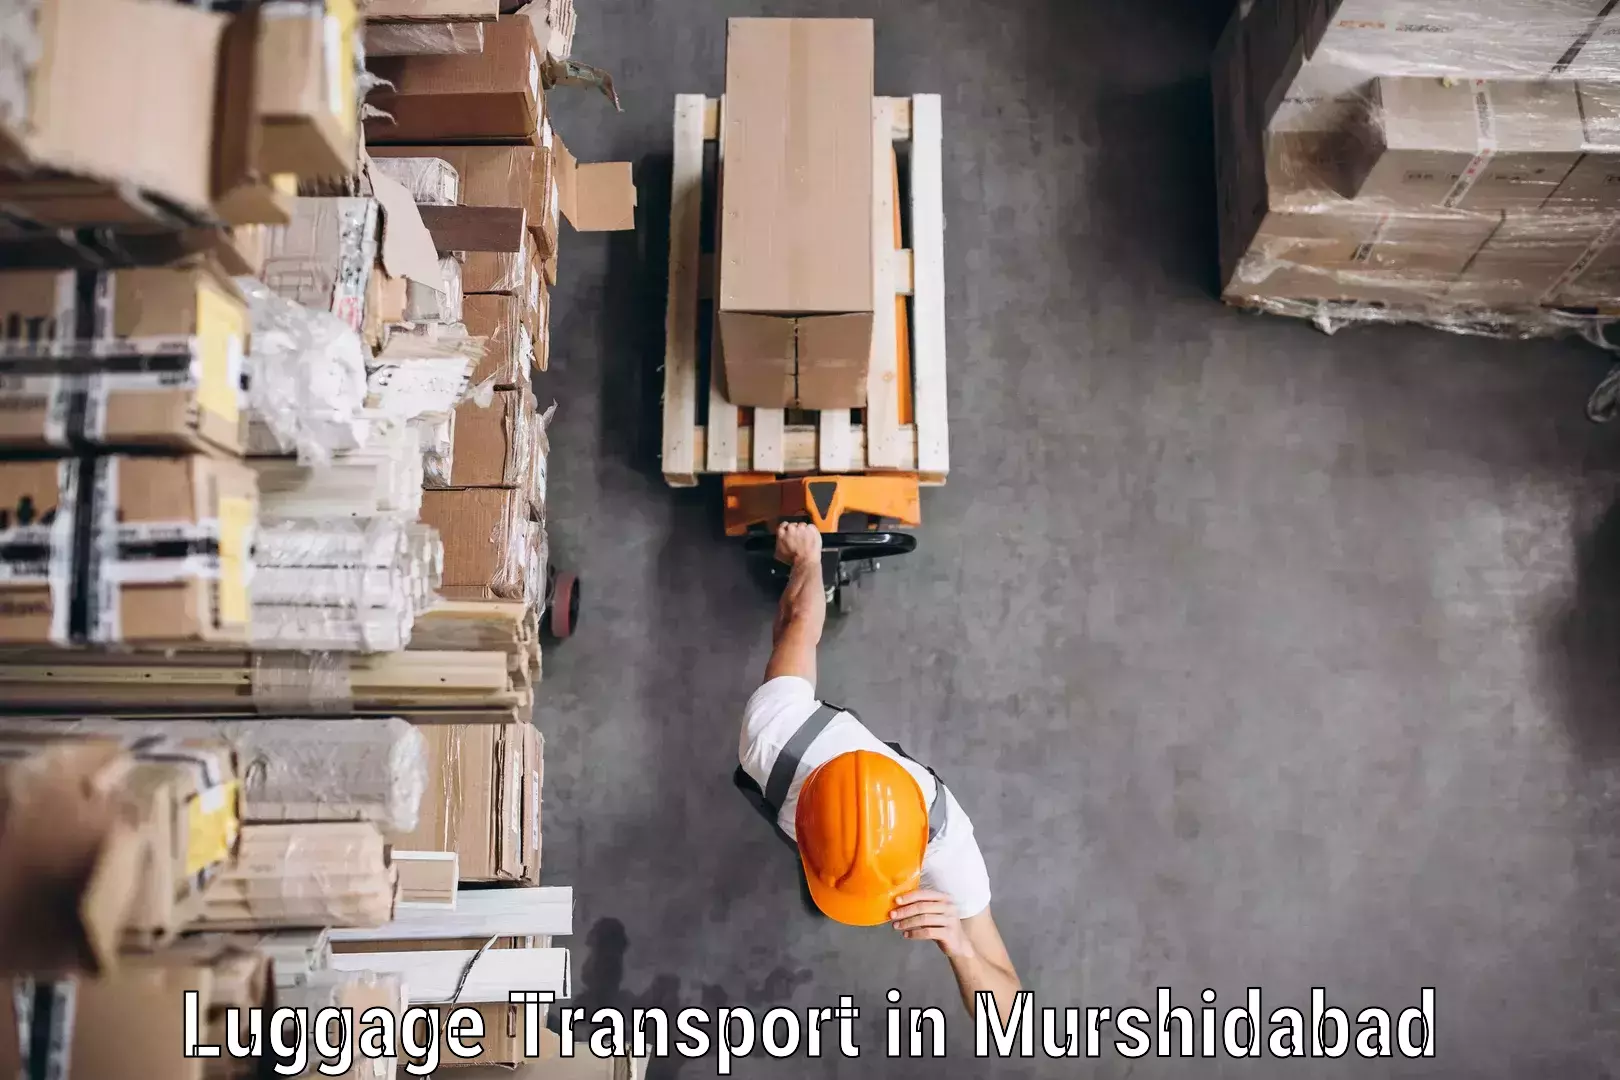 Luggage shipment logistics in Murshidabad